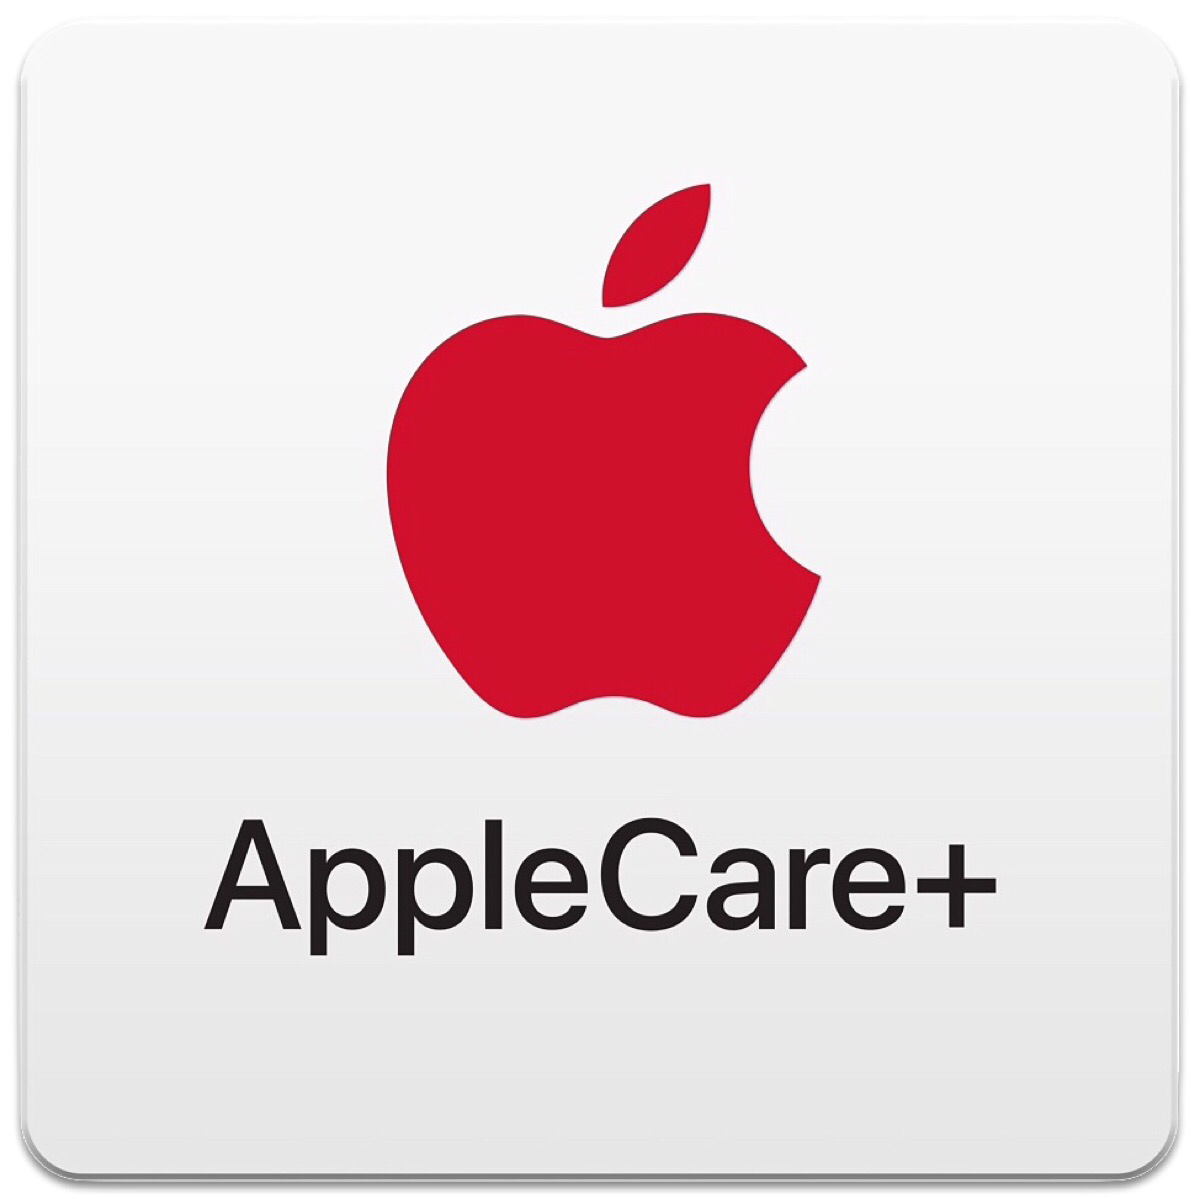 Apple reduce el costo de los planes AppleCare + para M1 MacBook Air y MacBook Pro